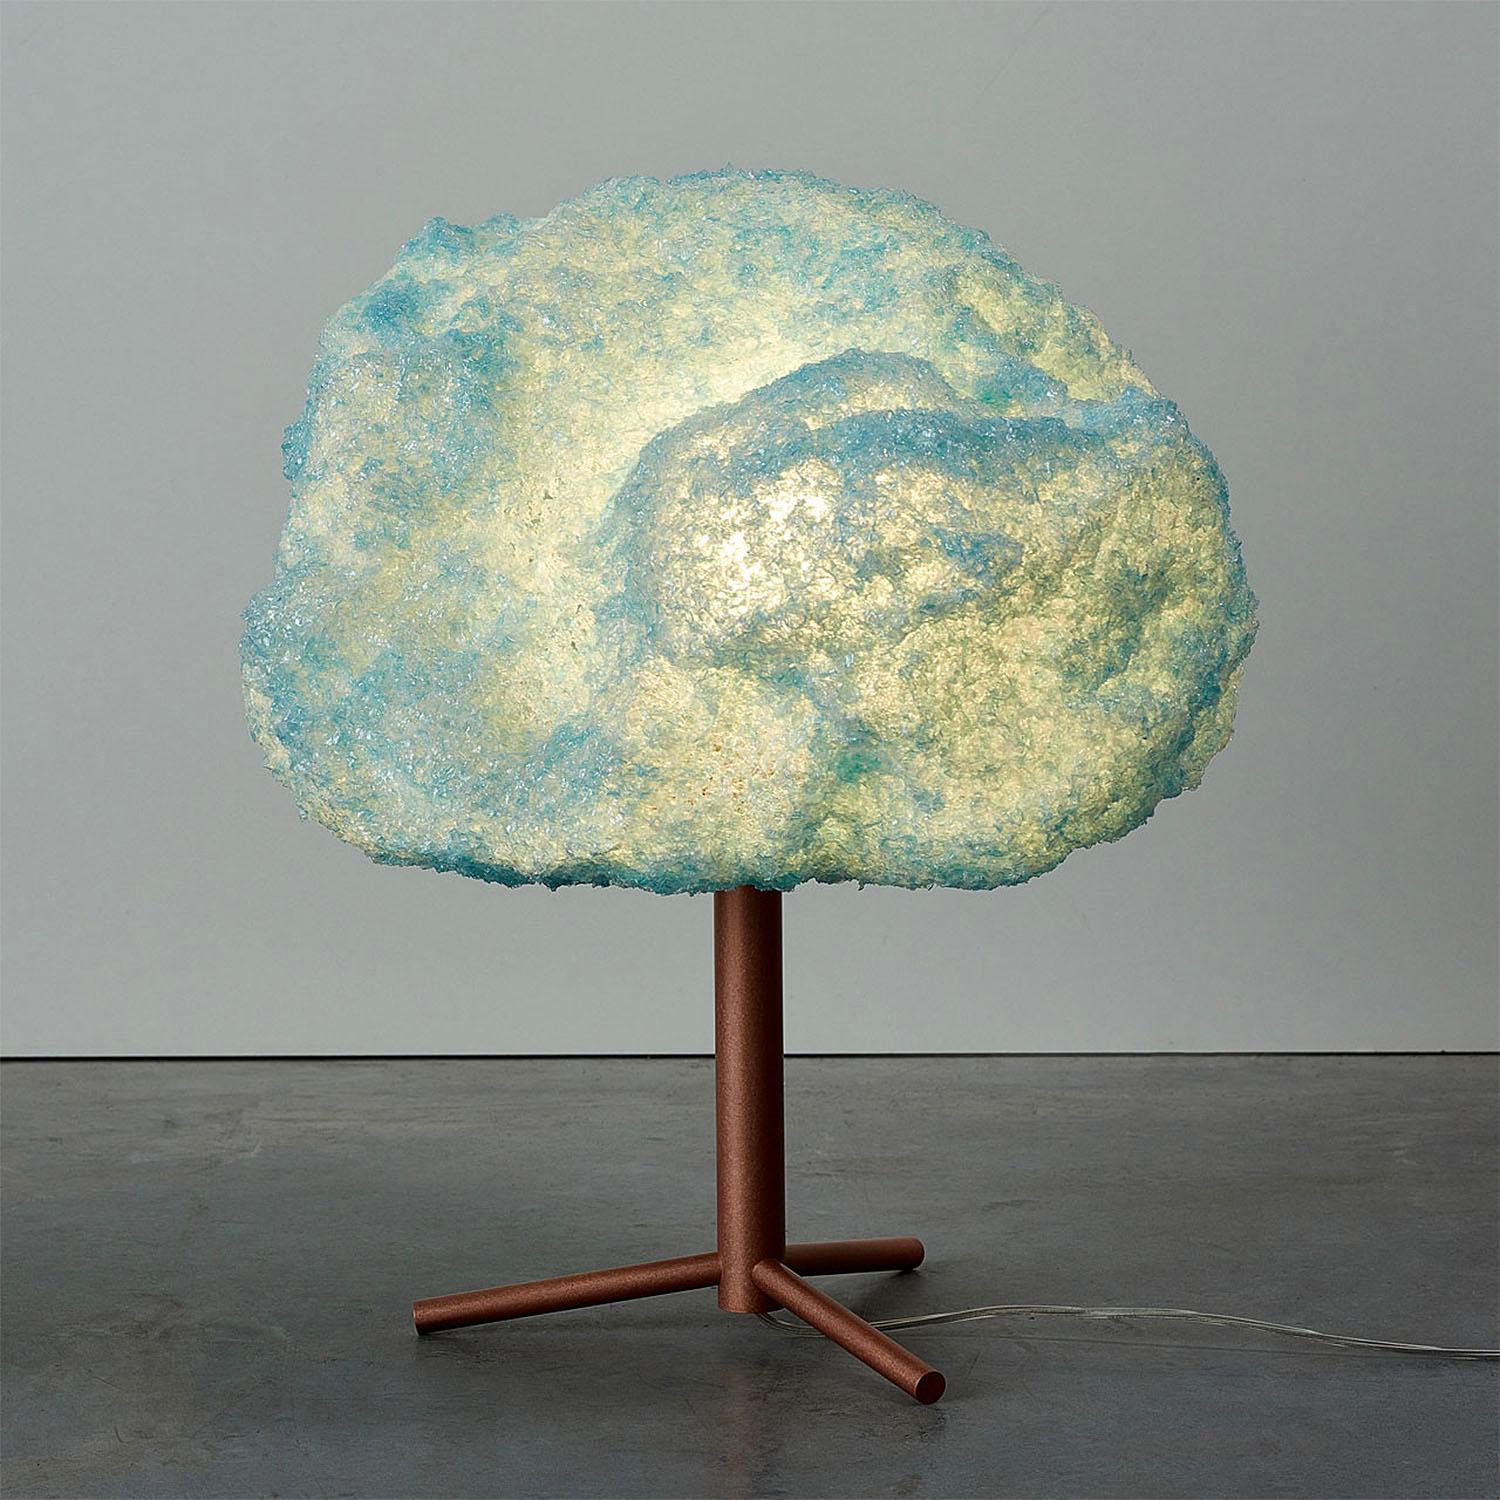 Lampe de table bleue contemporaine - Storm Light Copper de Johannes Hemann
Matériau : polycarbonate, cuivre
Dimensions : Ø 38 x H 45 cm
Options de matériaux : blanc, gris, bleu
La série Storm est, par son concept, l'exemple le plus pur d'un